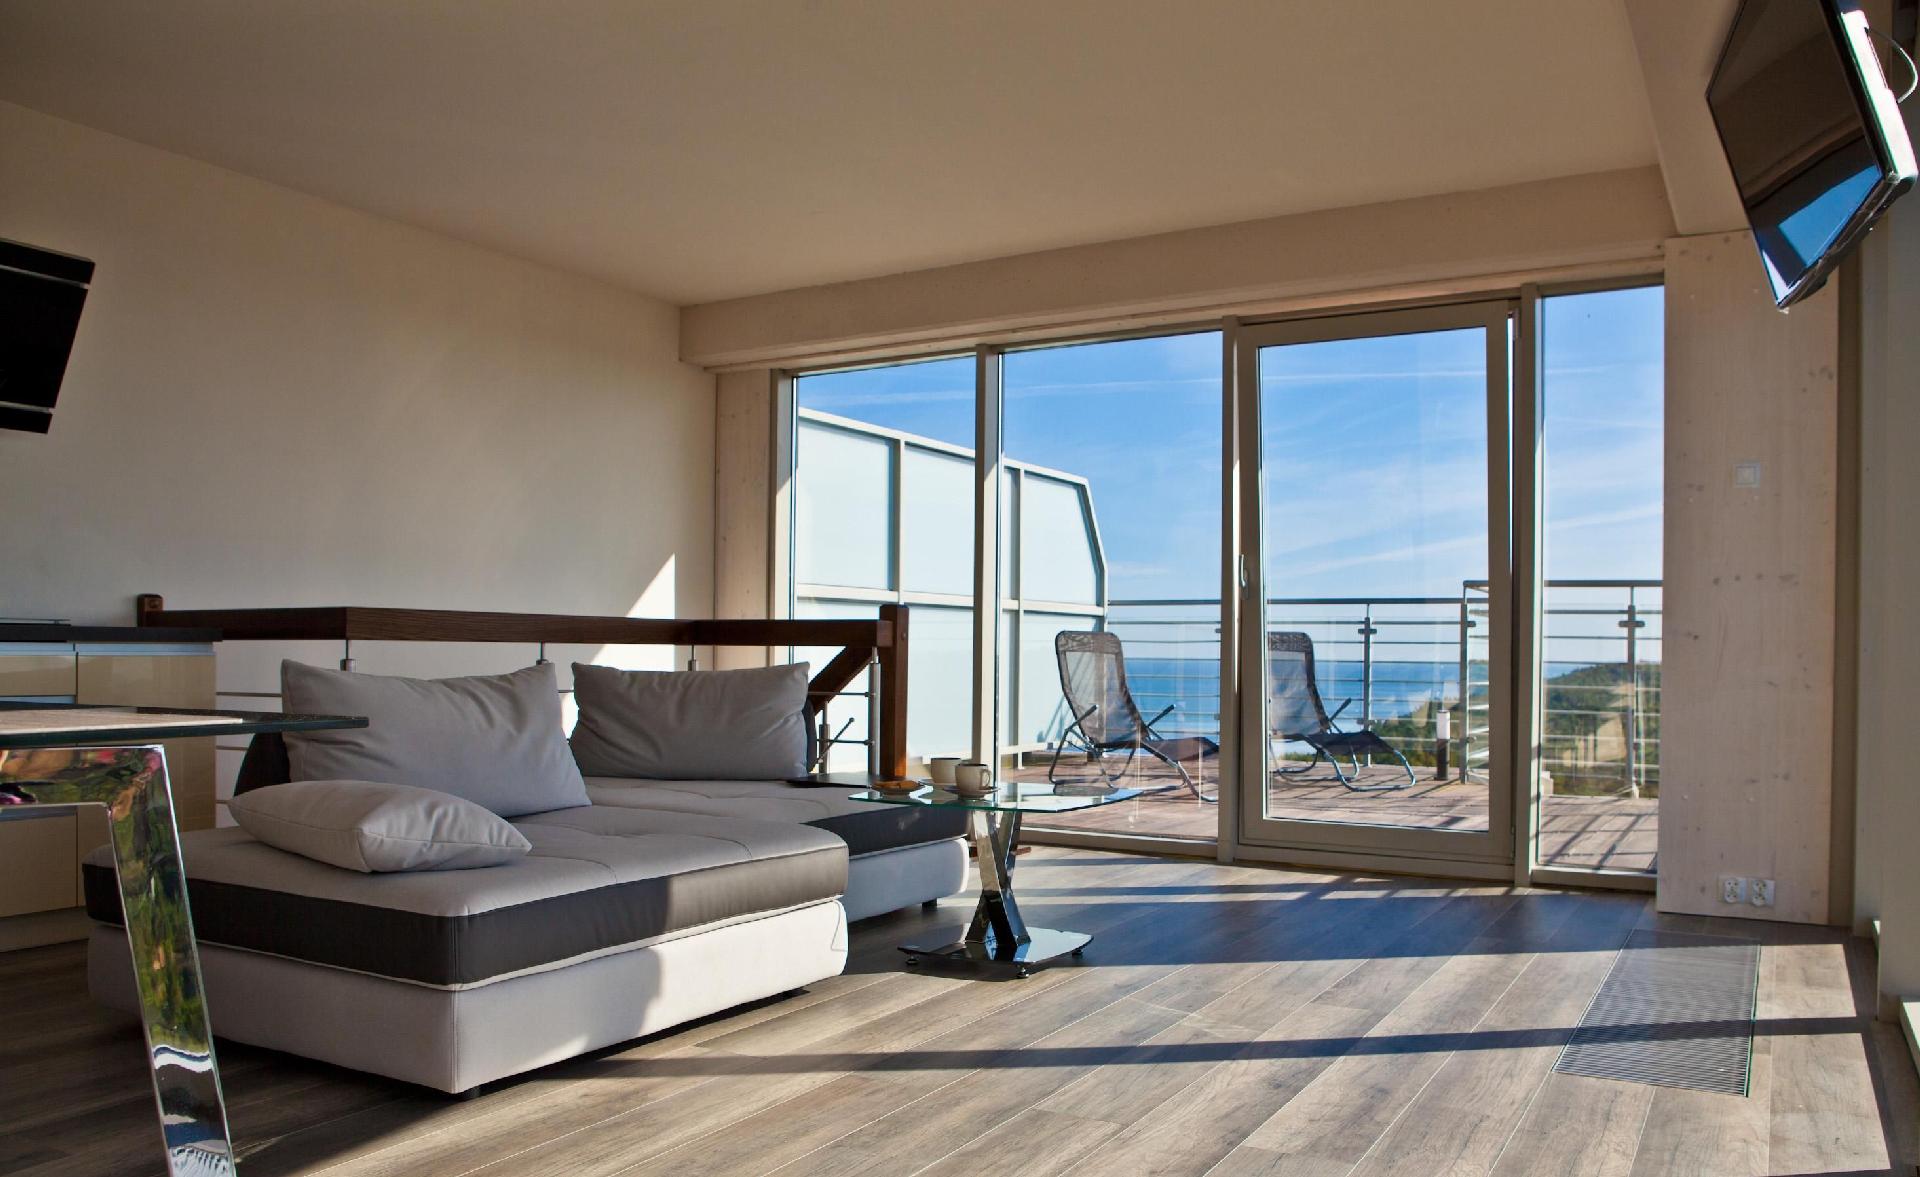 Wohnung mit Panoramaverglasung und Meerblick Ferienwohnung in Europa